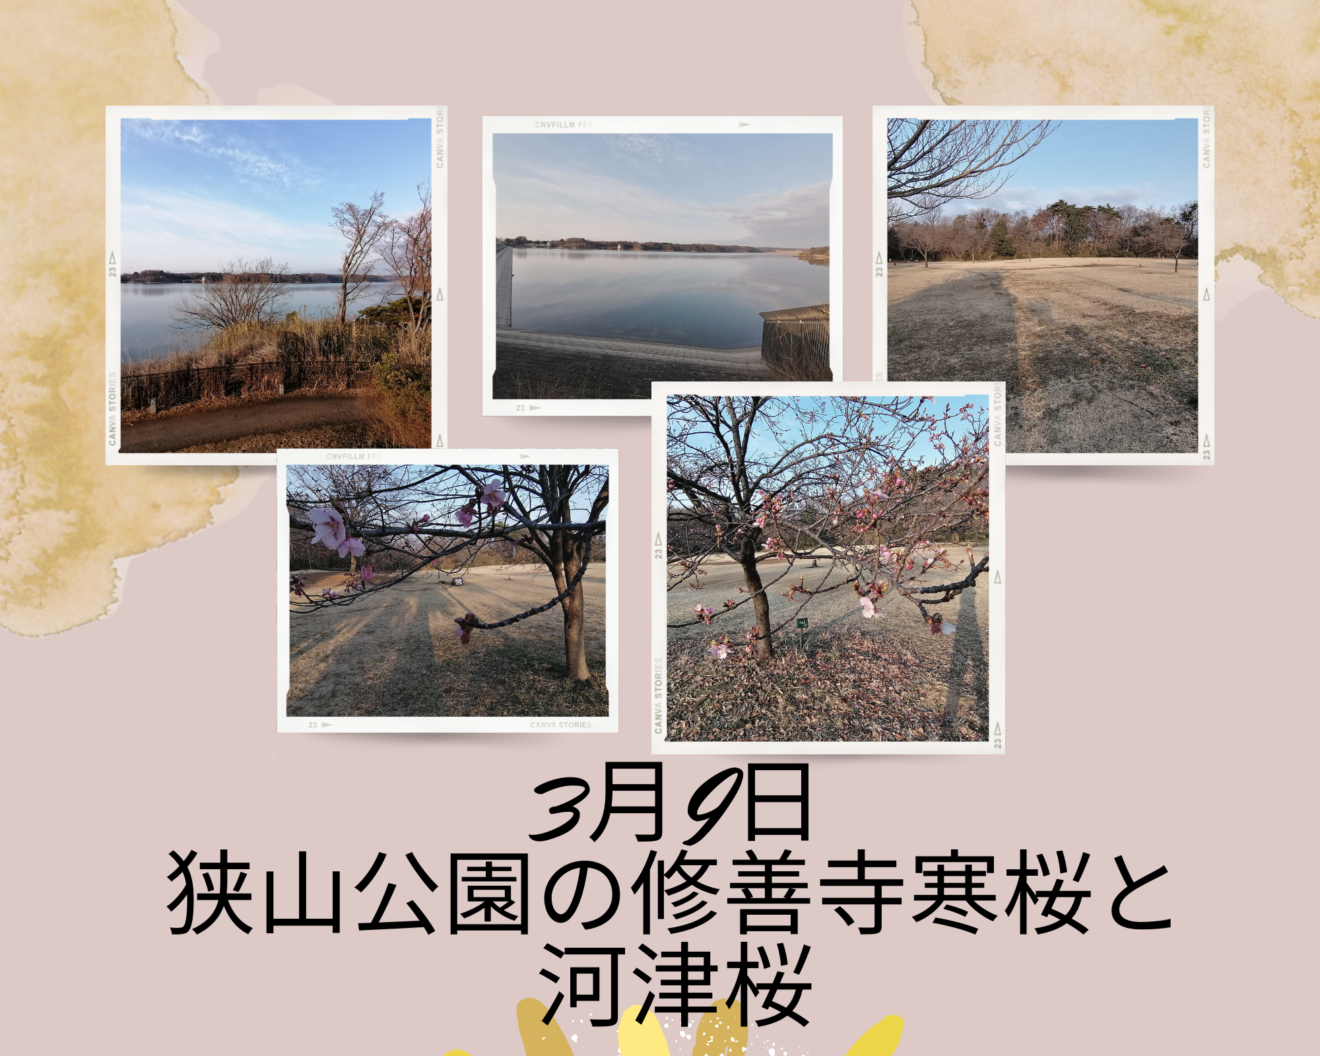 3月9日 狭山公園の修善寺寒桜と河津桜